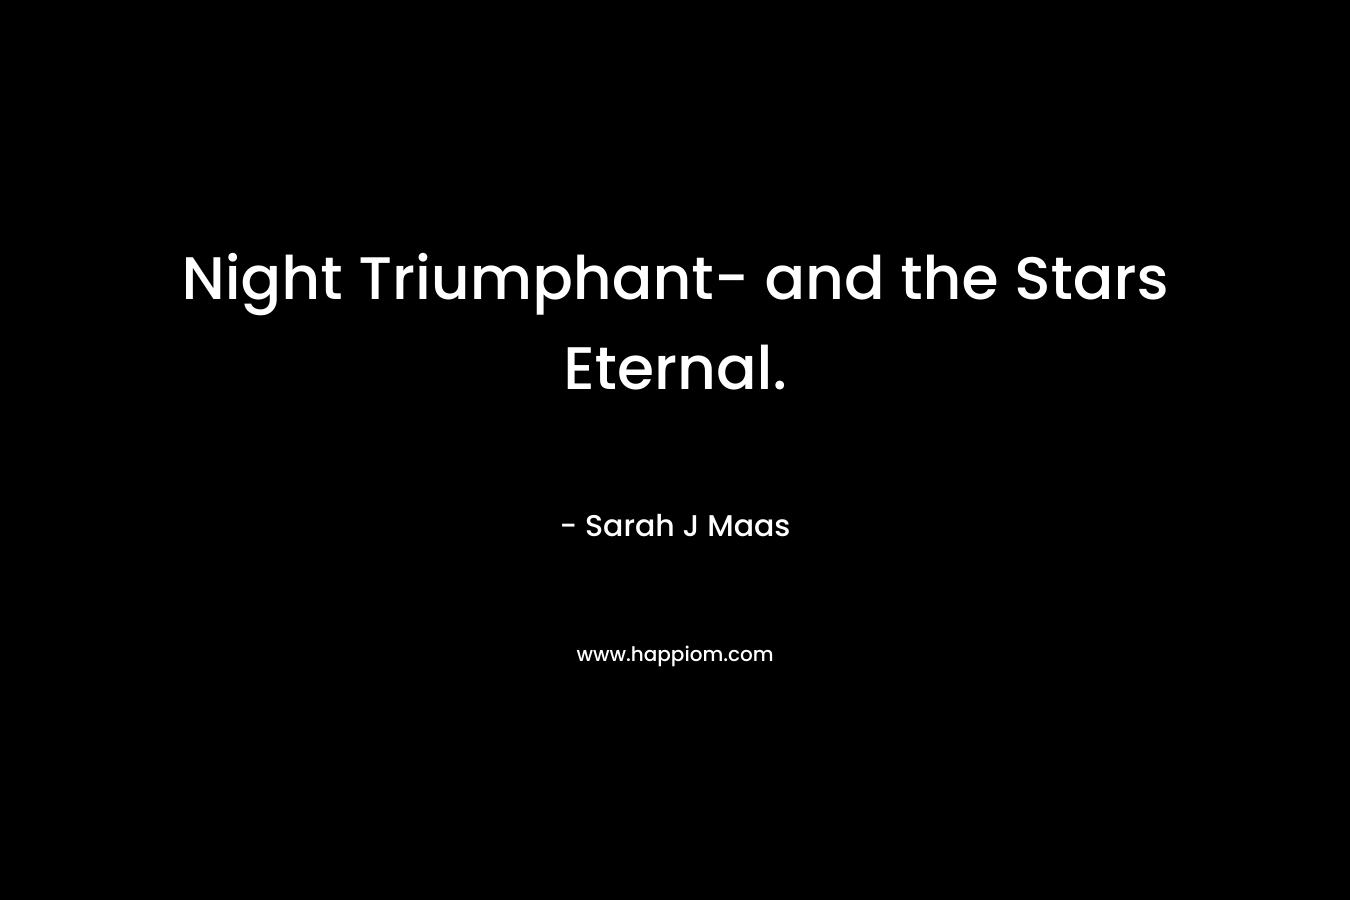 Night Triumphant- and the Stars Eternal. – Sarah J Maas